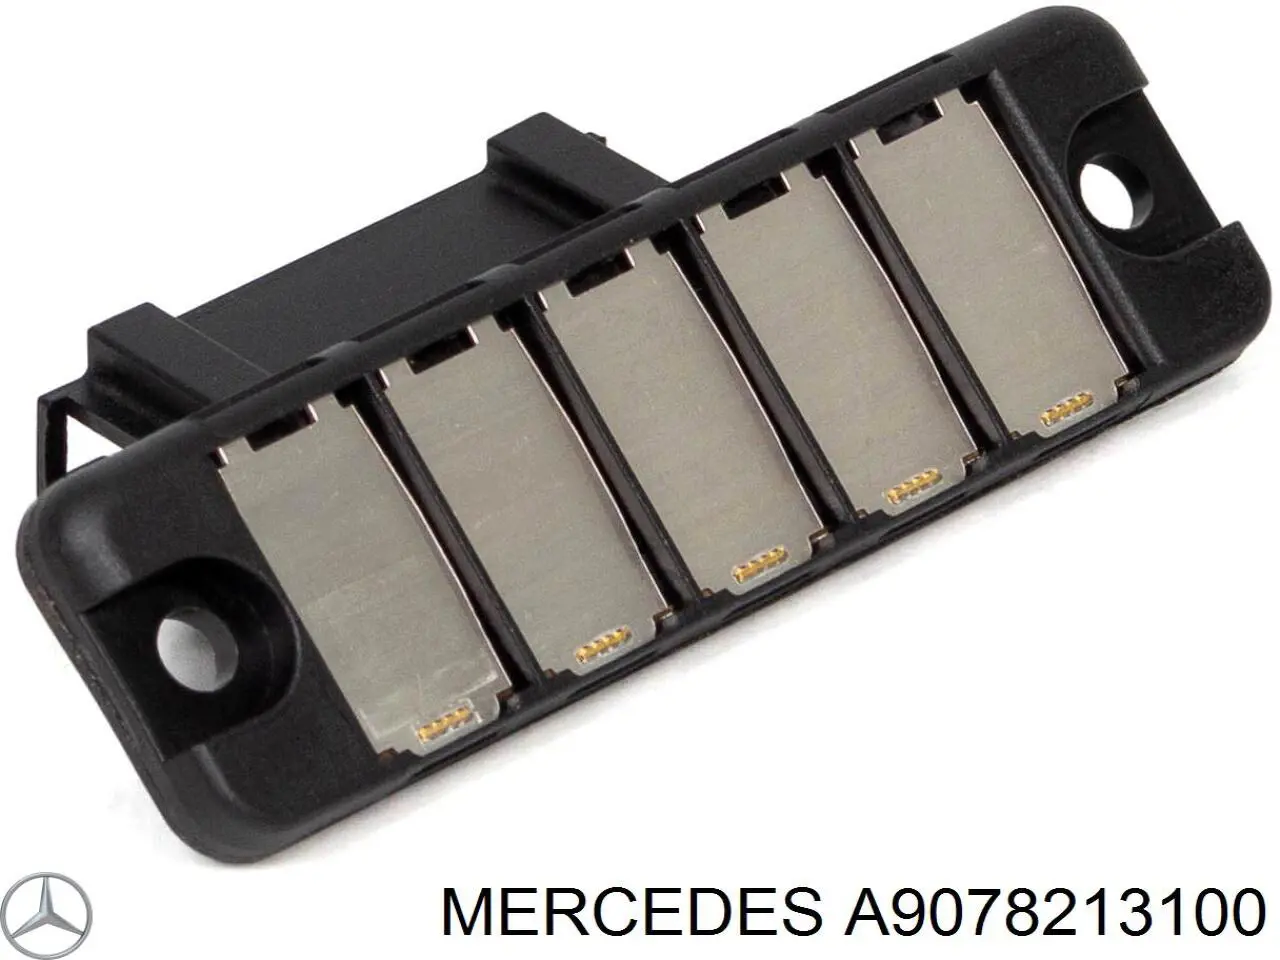 Sensor, Interruptor de contacto eléctrico para puerta corrediza, en carrocería para Mercedes Viano (W639)